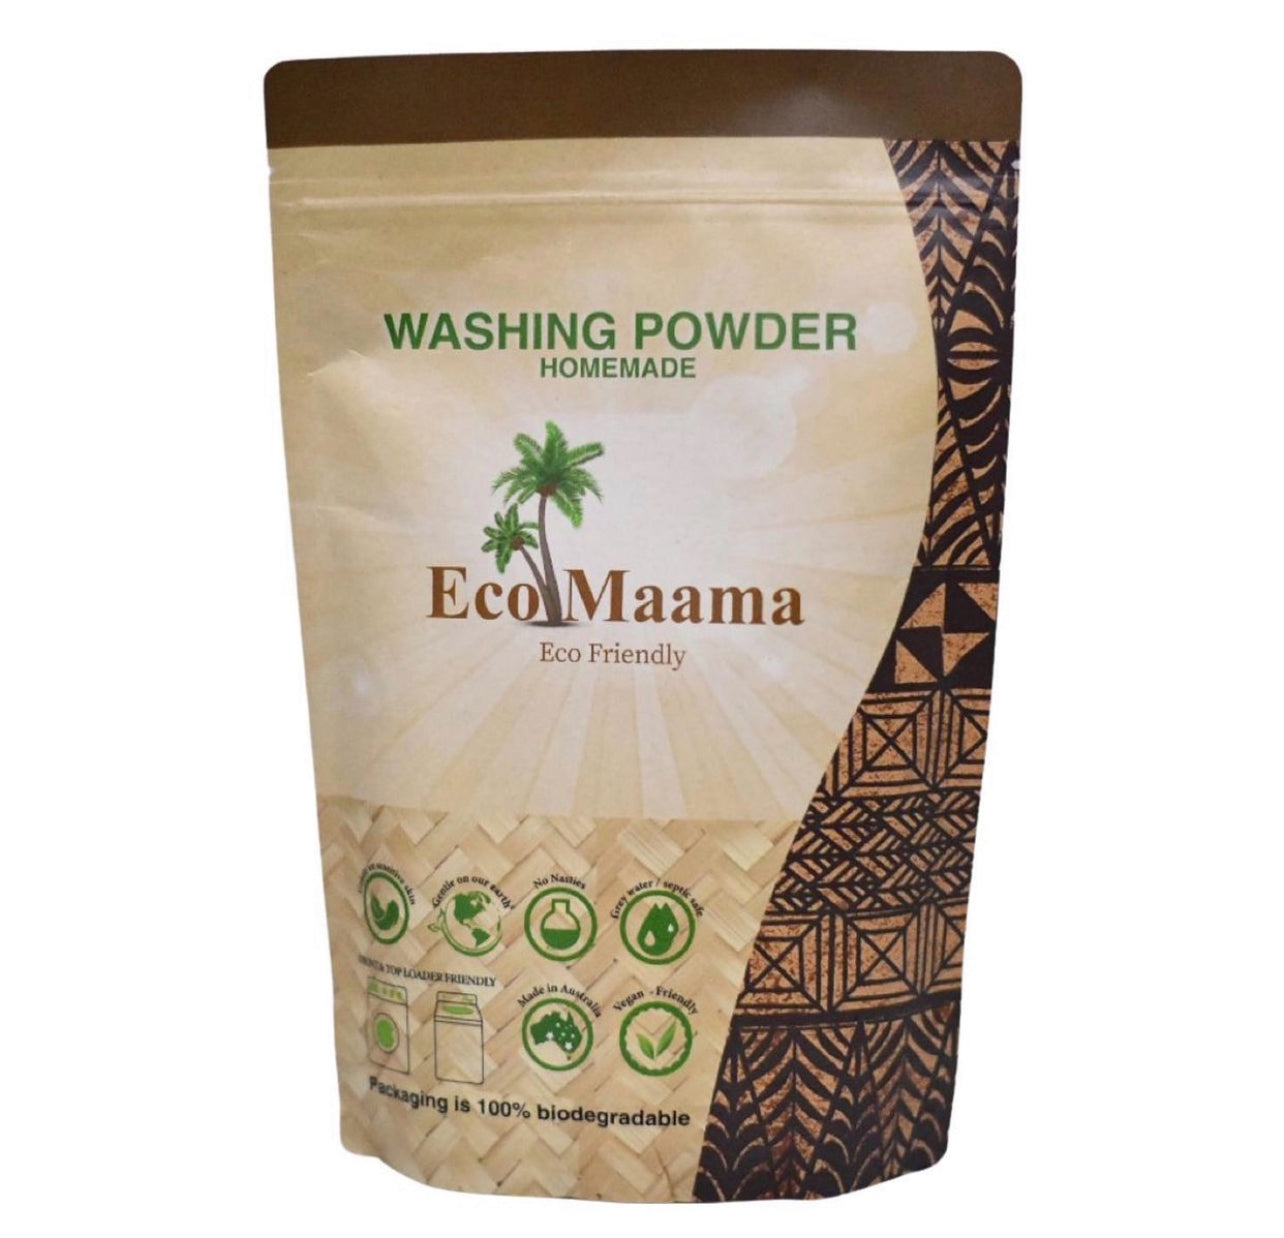 Eco Maama washing powder